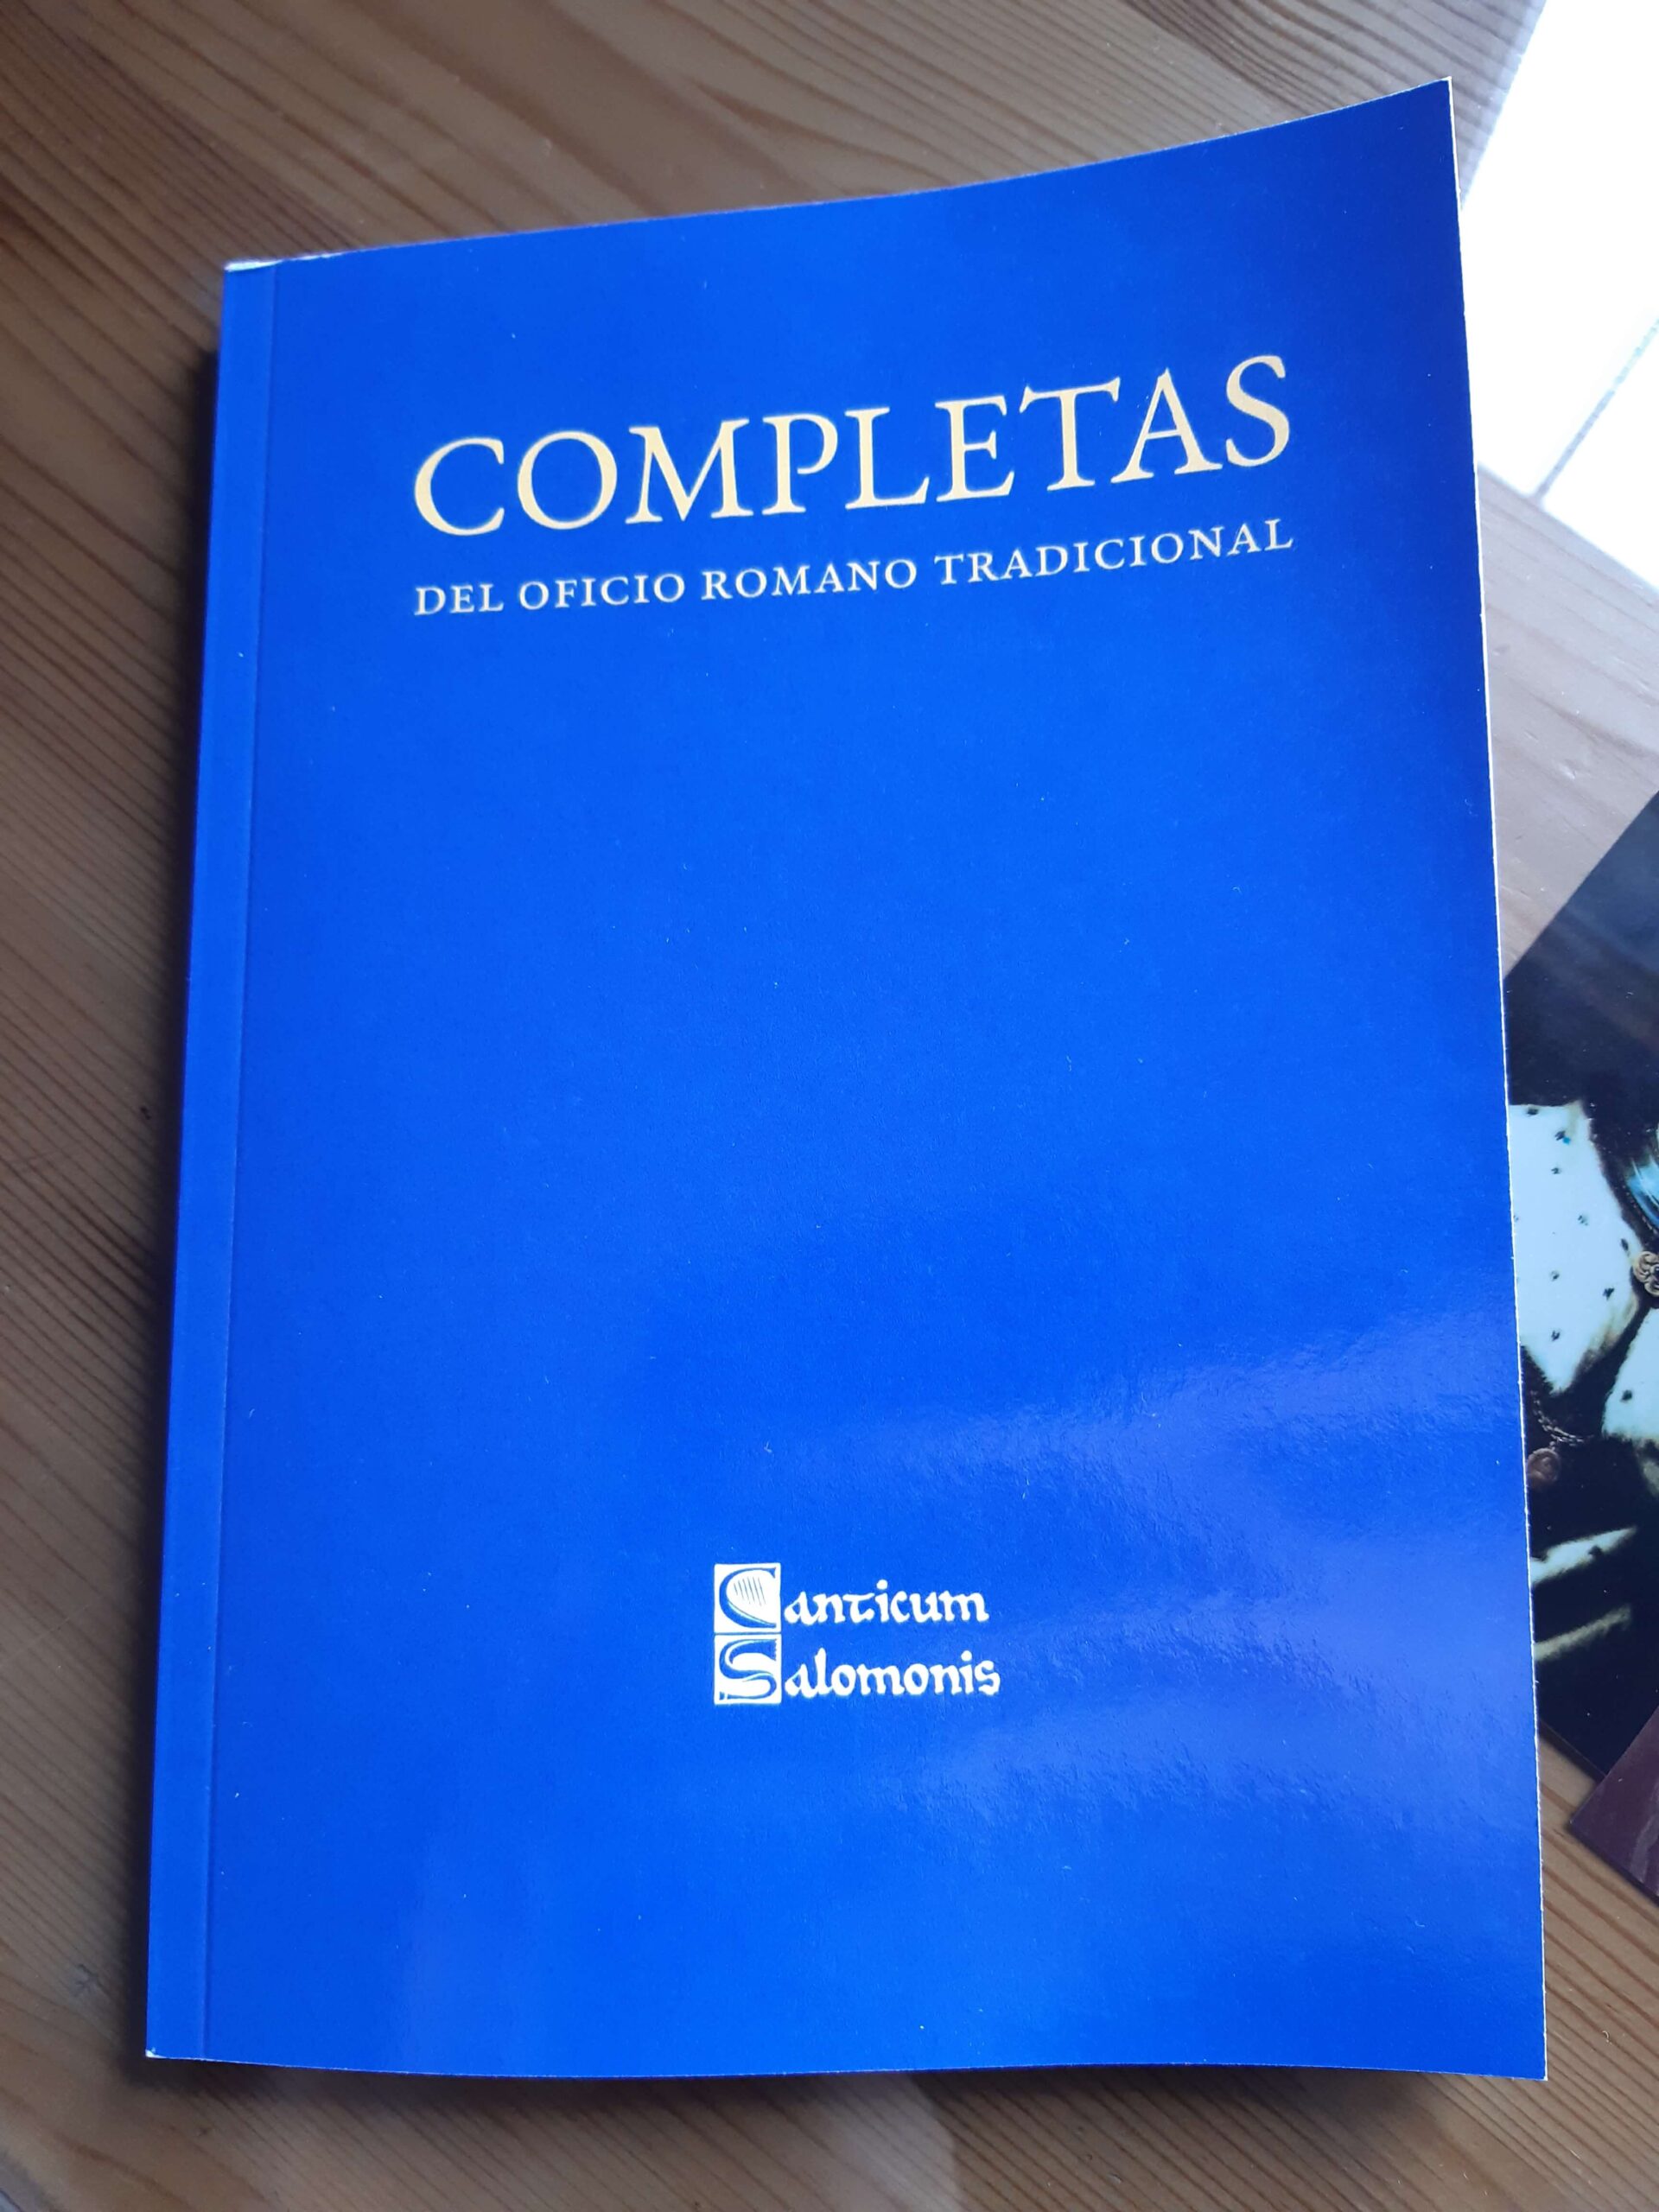 Librito de las Completas del Oficio Romano Tradicional, Editorial Canticum Salomonis